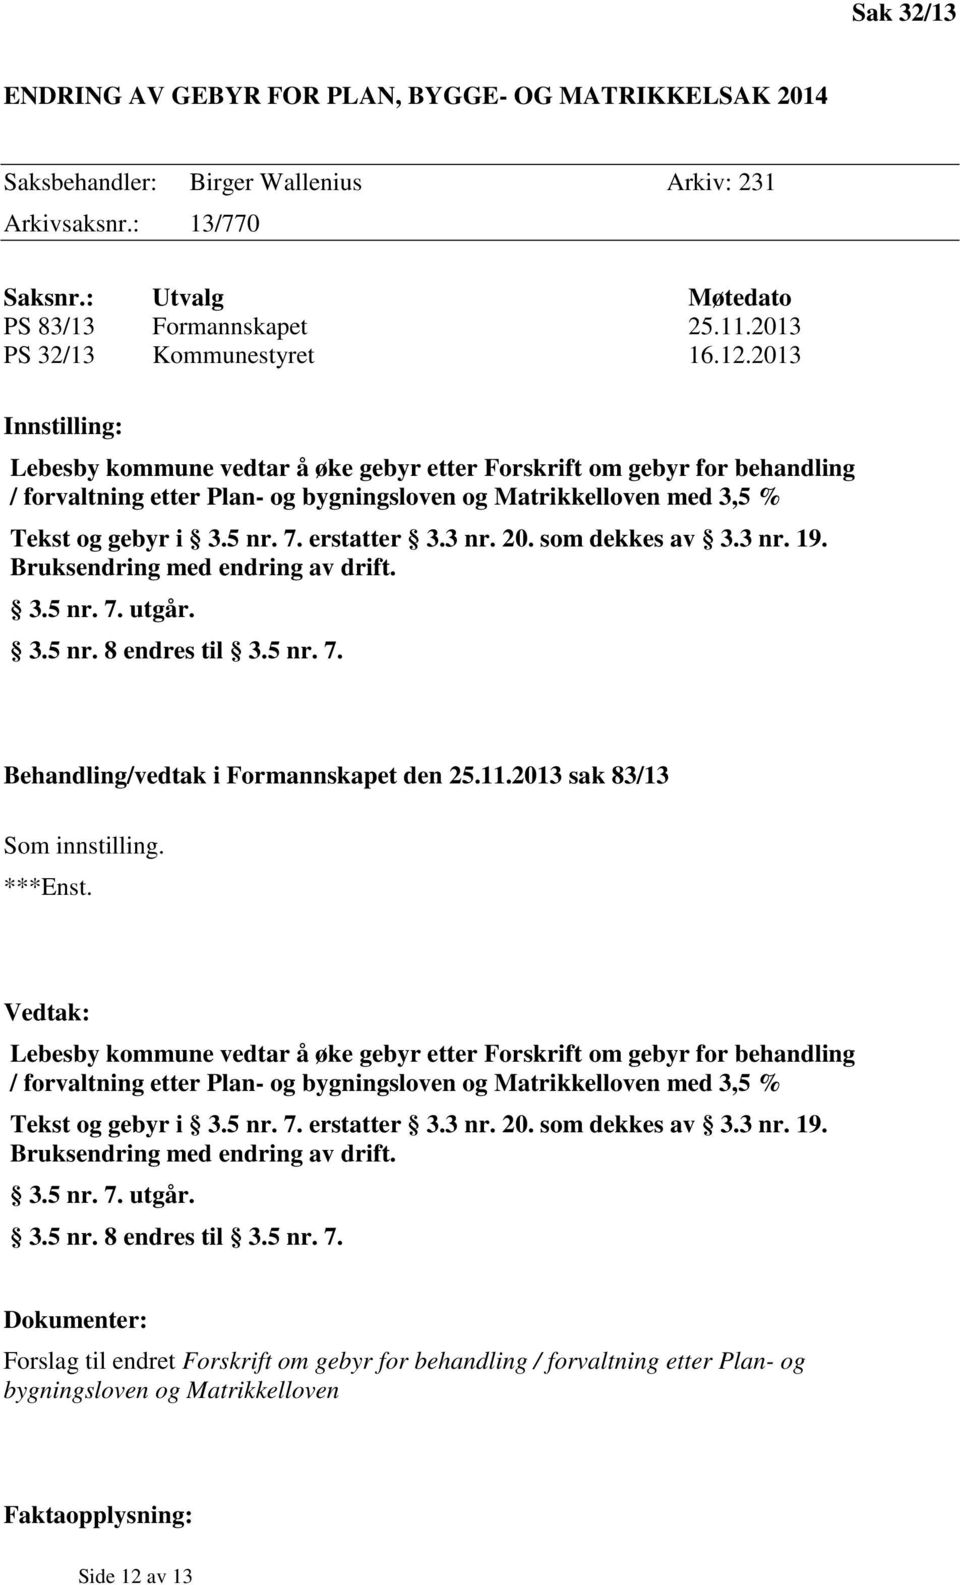 2013 Innstilling: Lebesby kommune vedtar å øke gebyr etter Forskrift om gebyr for behandling / forvaltning etter Plan- og bygningsloven og Matrikkelloven med 3,5 % Tekst og gebyr i 3.5 nr. 7.